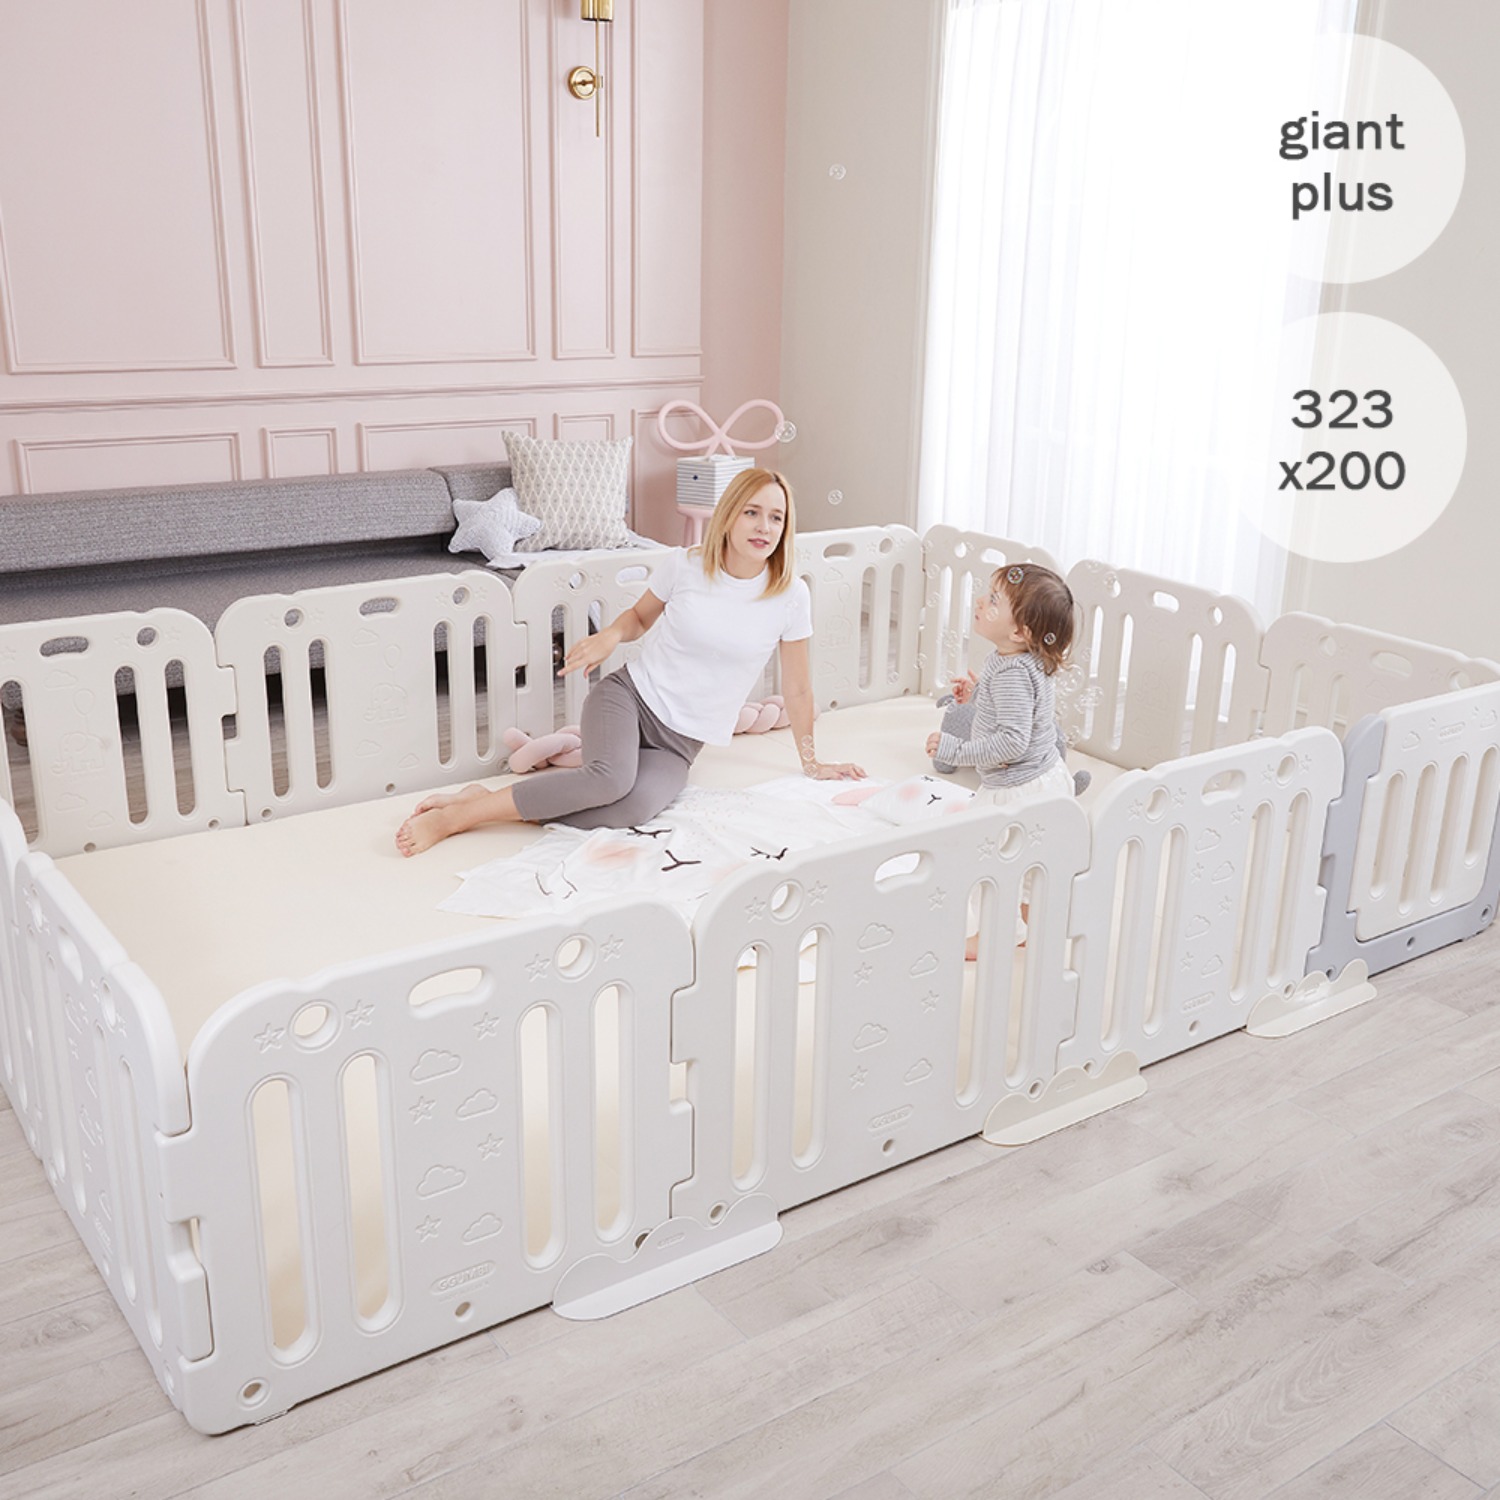 giant plus baby room set 323 x 200